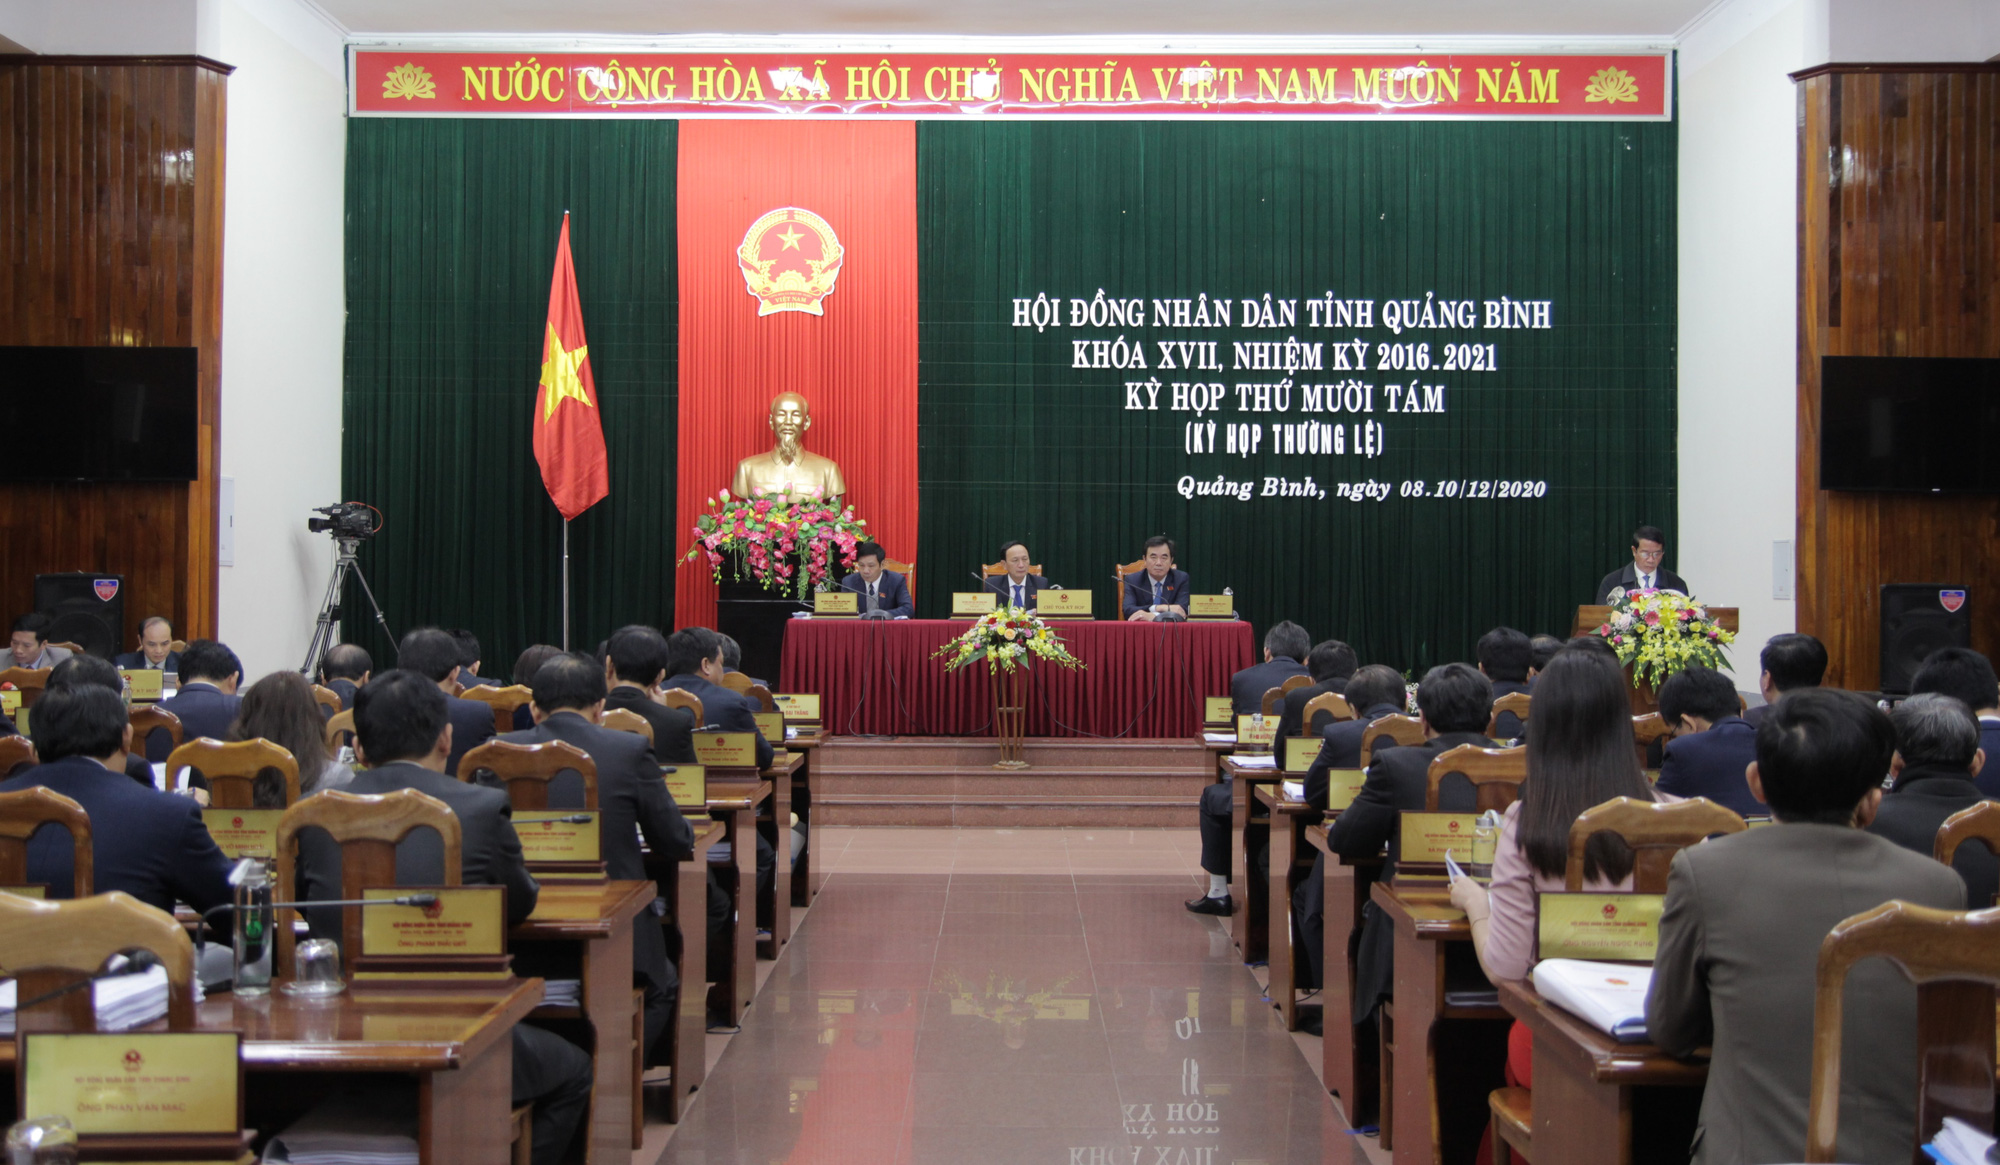 Bầu cử UBND Quảng Bình: Năm 2024, sẽ diễn ra cuộc bầu cử UBND Quảng Bình với sự tham gia của những ứng cử viên tài năng và đầy nhiệt huyết. Người dân tỉnh sẽ được lựa chọn những người đại diện có năng lực và lòng yêu nước, góp phần xây dựng Quảng Bình ngày một phát triển.